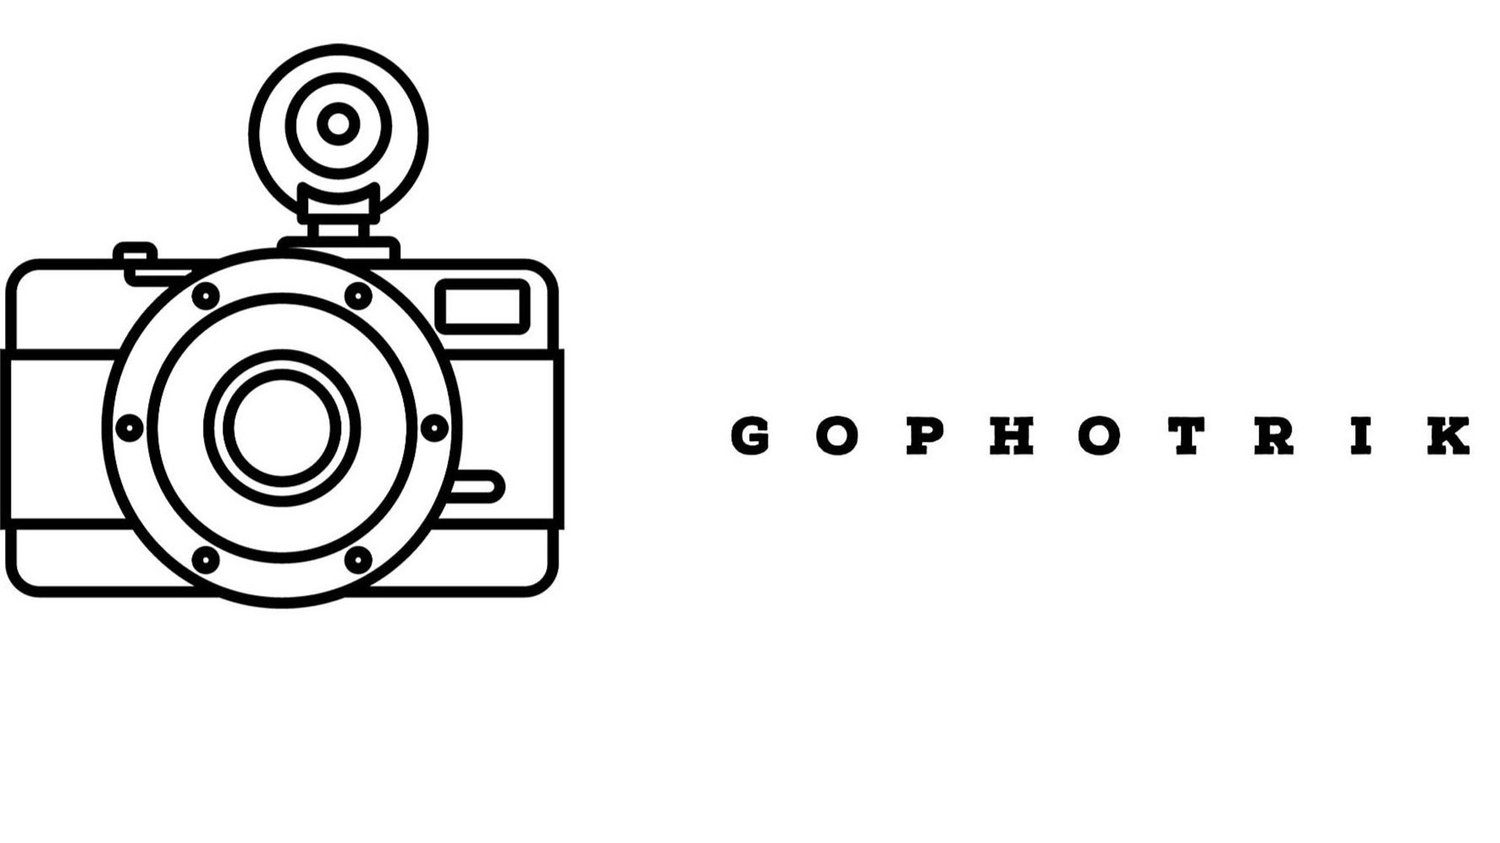 Gophotrik